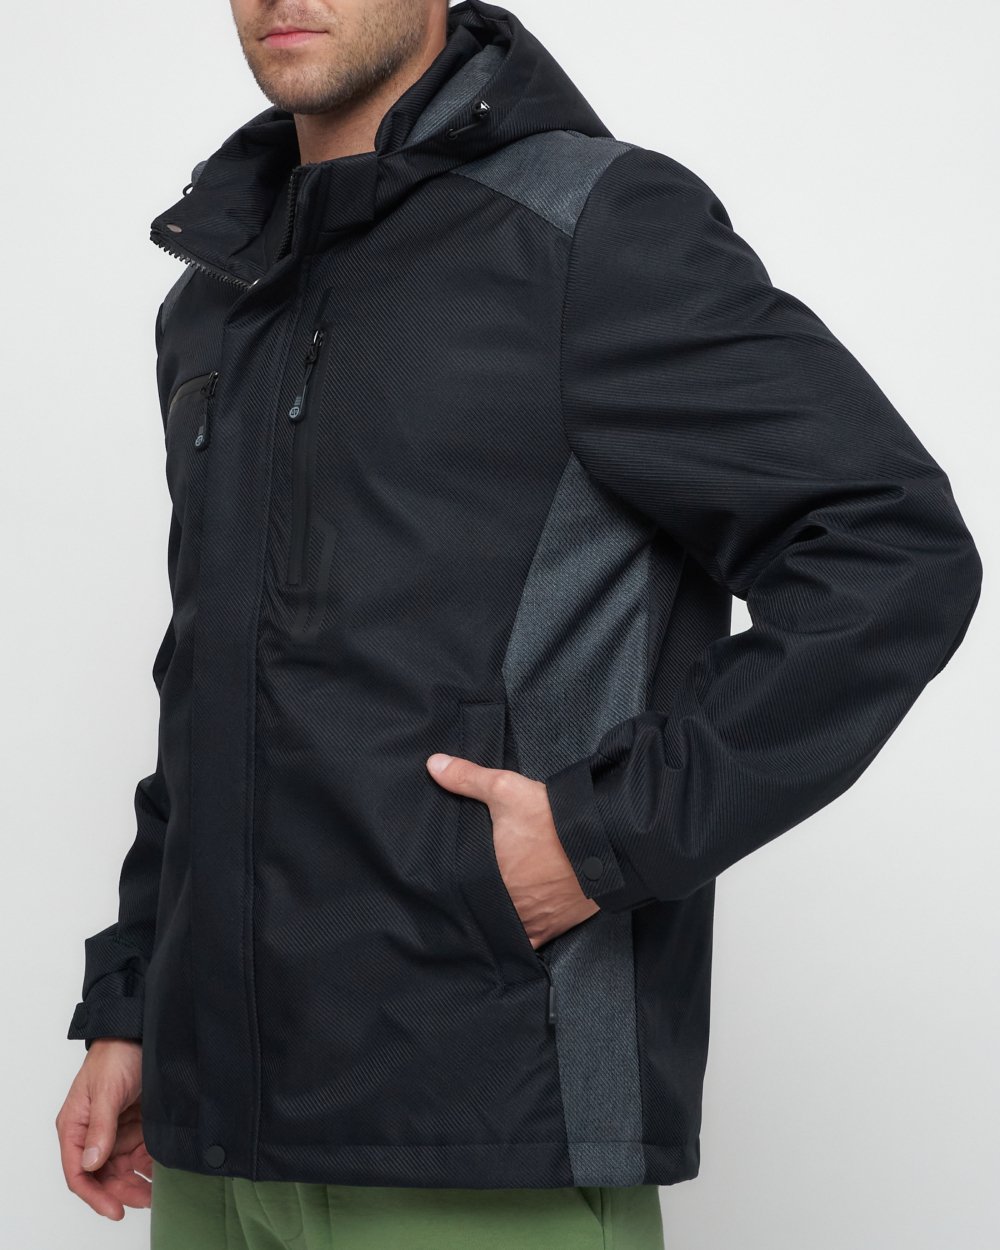 Купить куртку мужскую спортивную весеннюю оптом от производителя недорого в Москве 6652TS 1